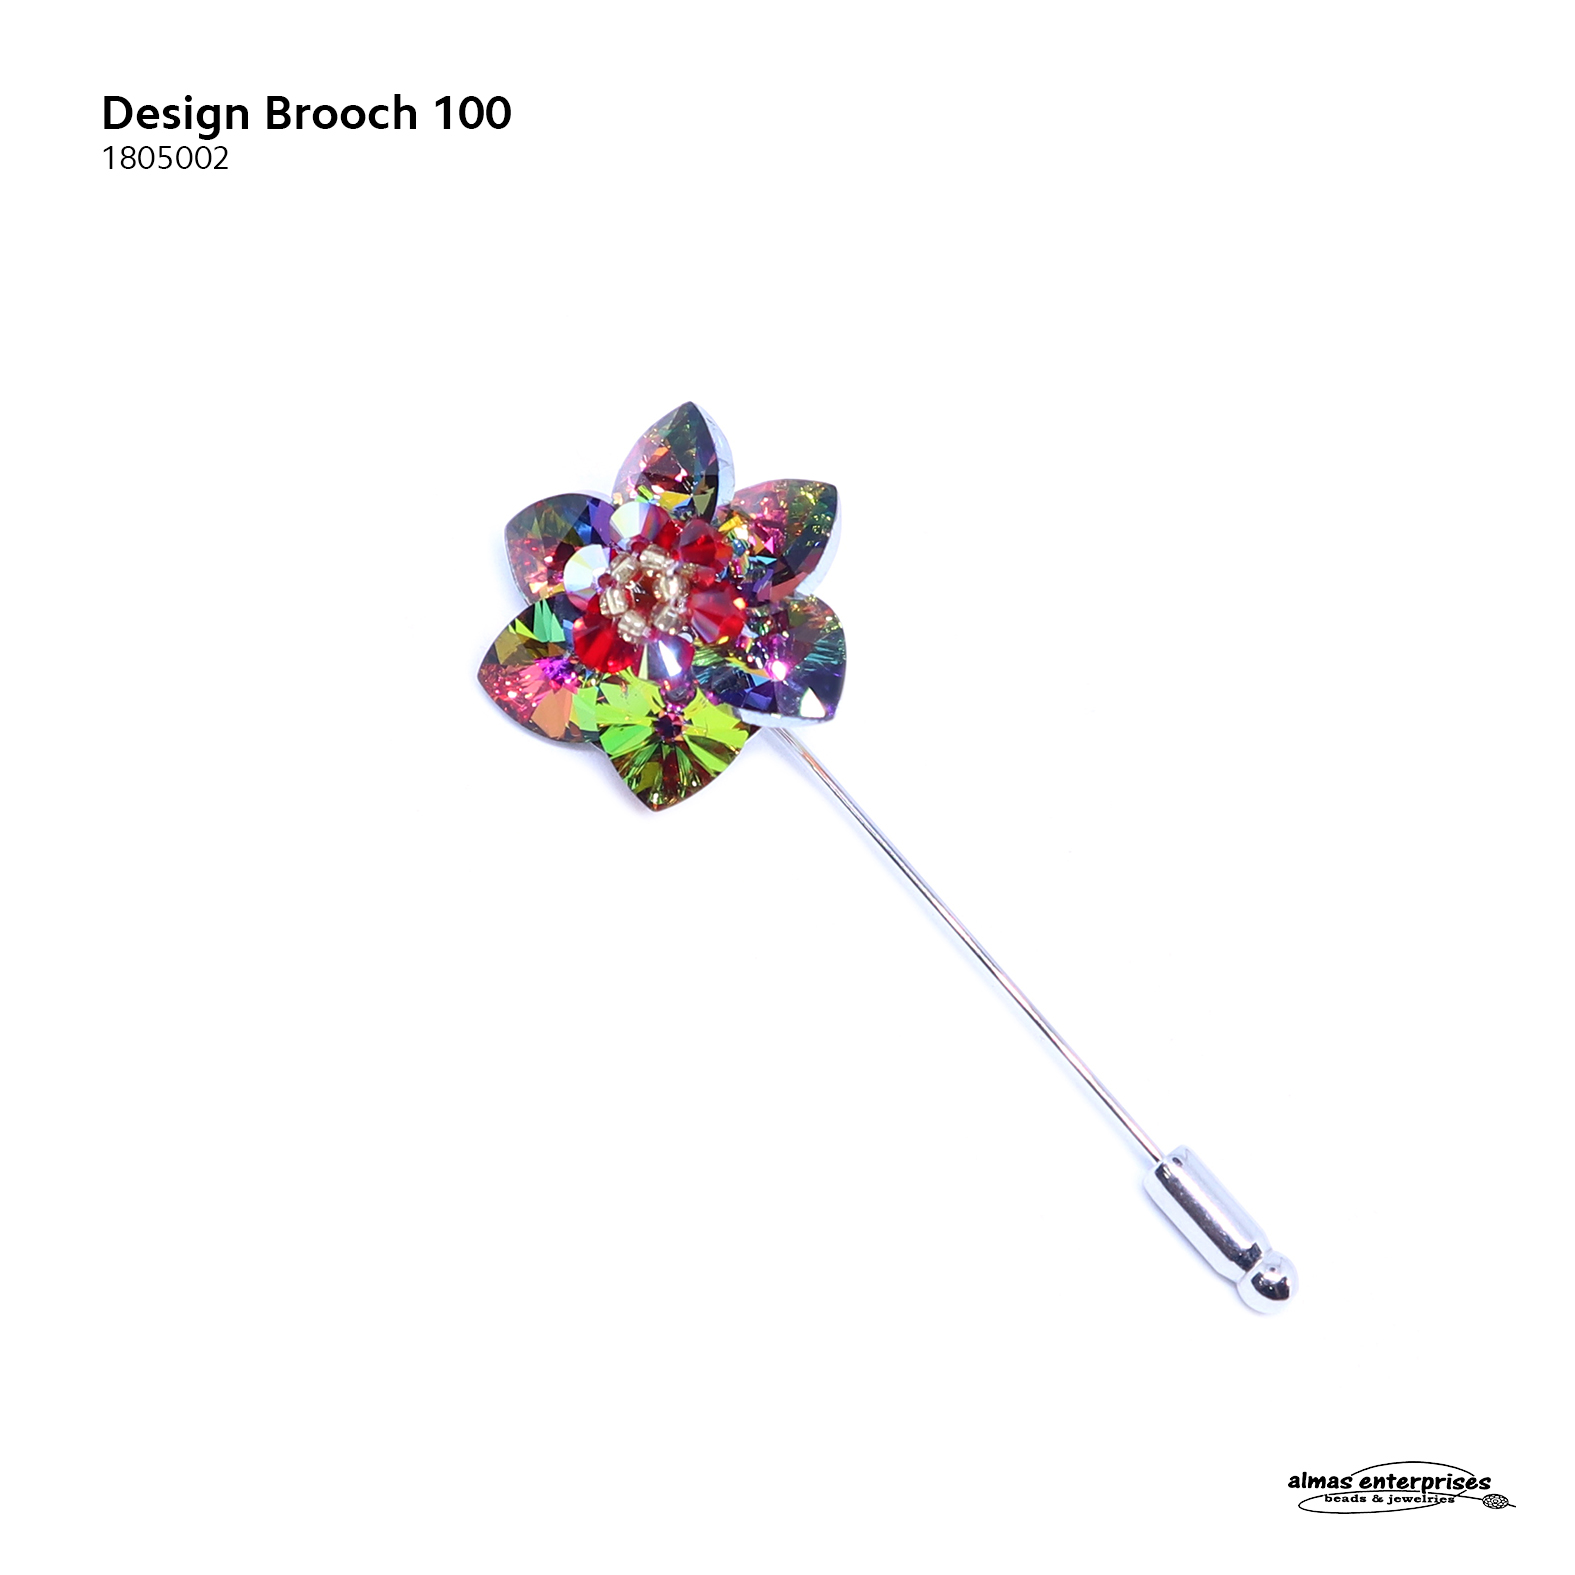  Design Brooch 100